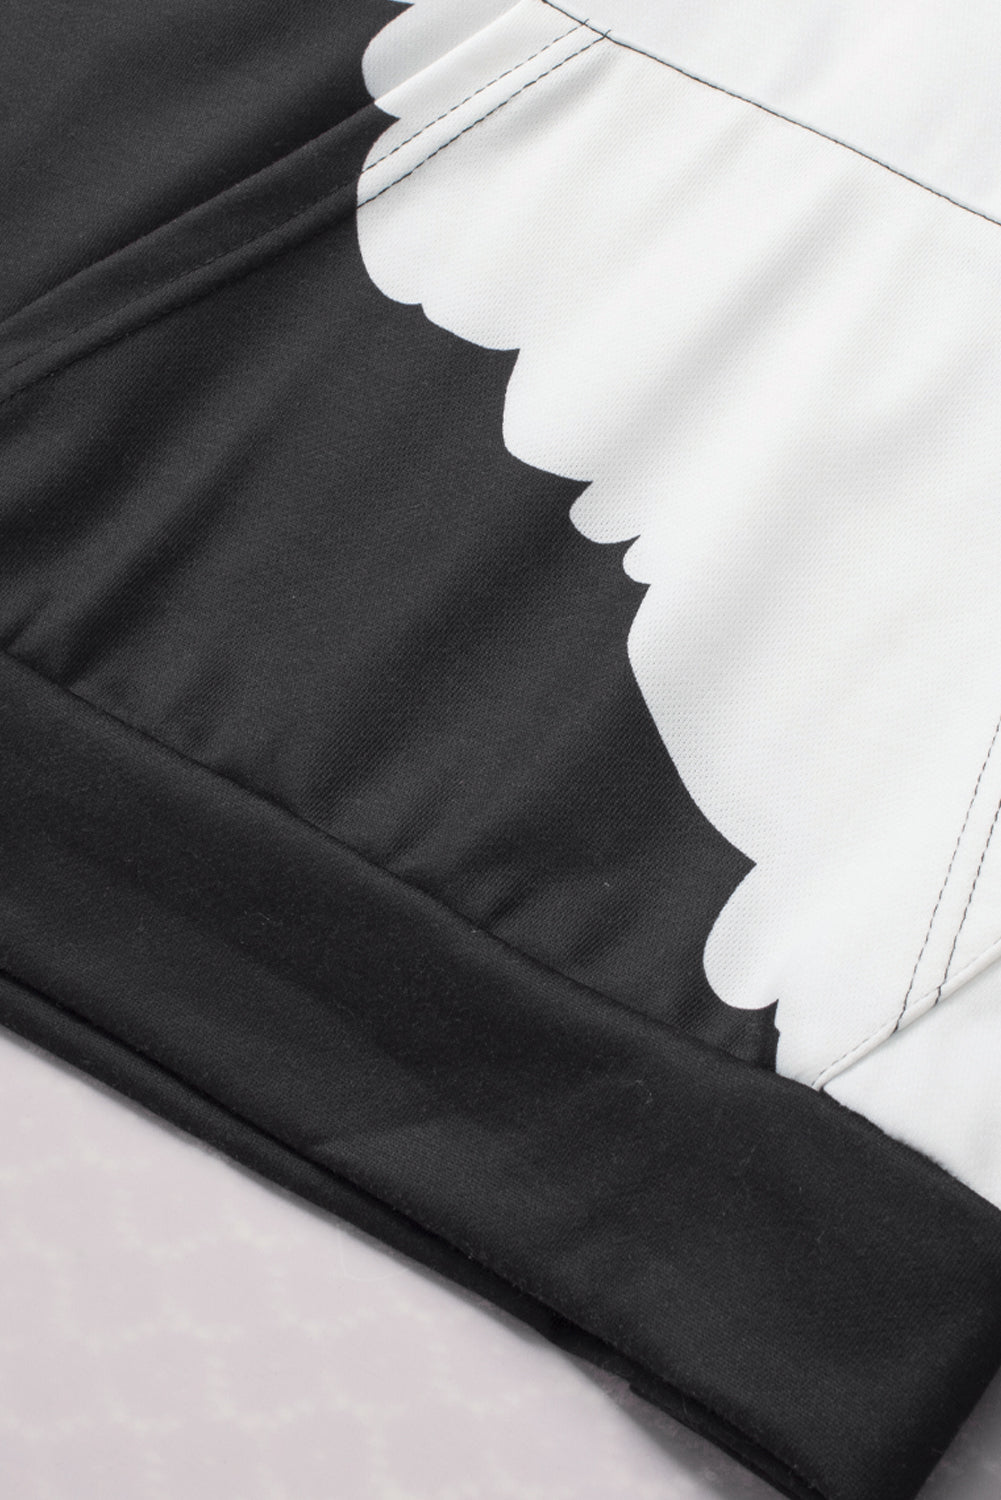 Schwarzer Kapuzenpullover mit Kordelzug im Kuh-Tie-Dye-Print mit Taschen